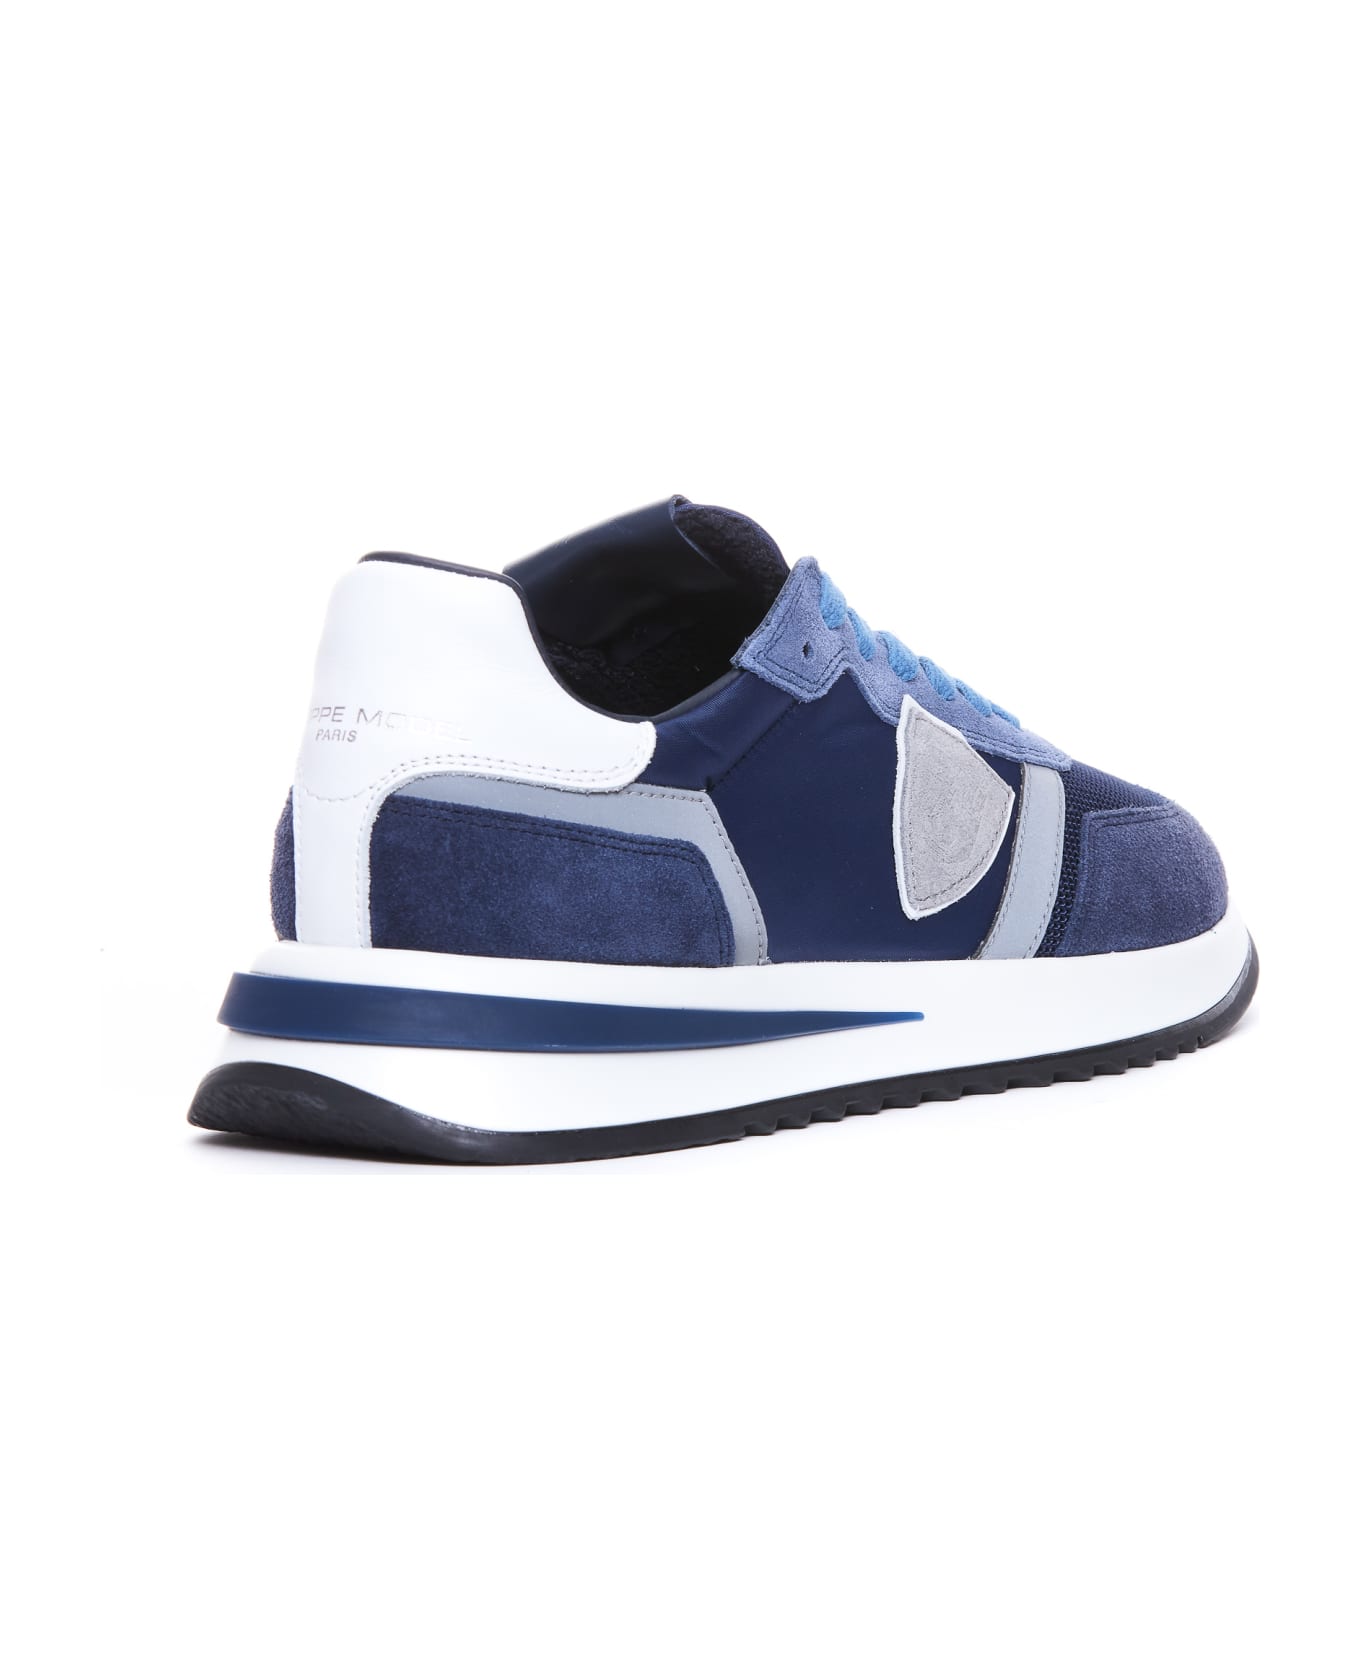 Philippe Model Tropez Sneakers - Blu